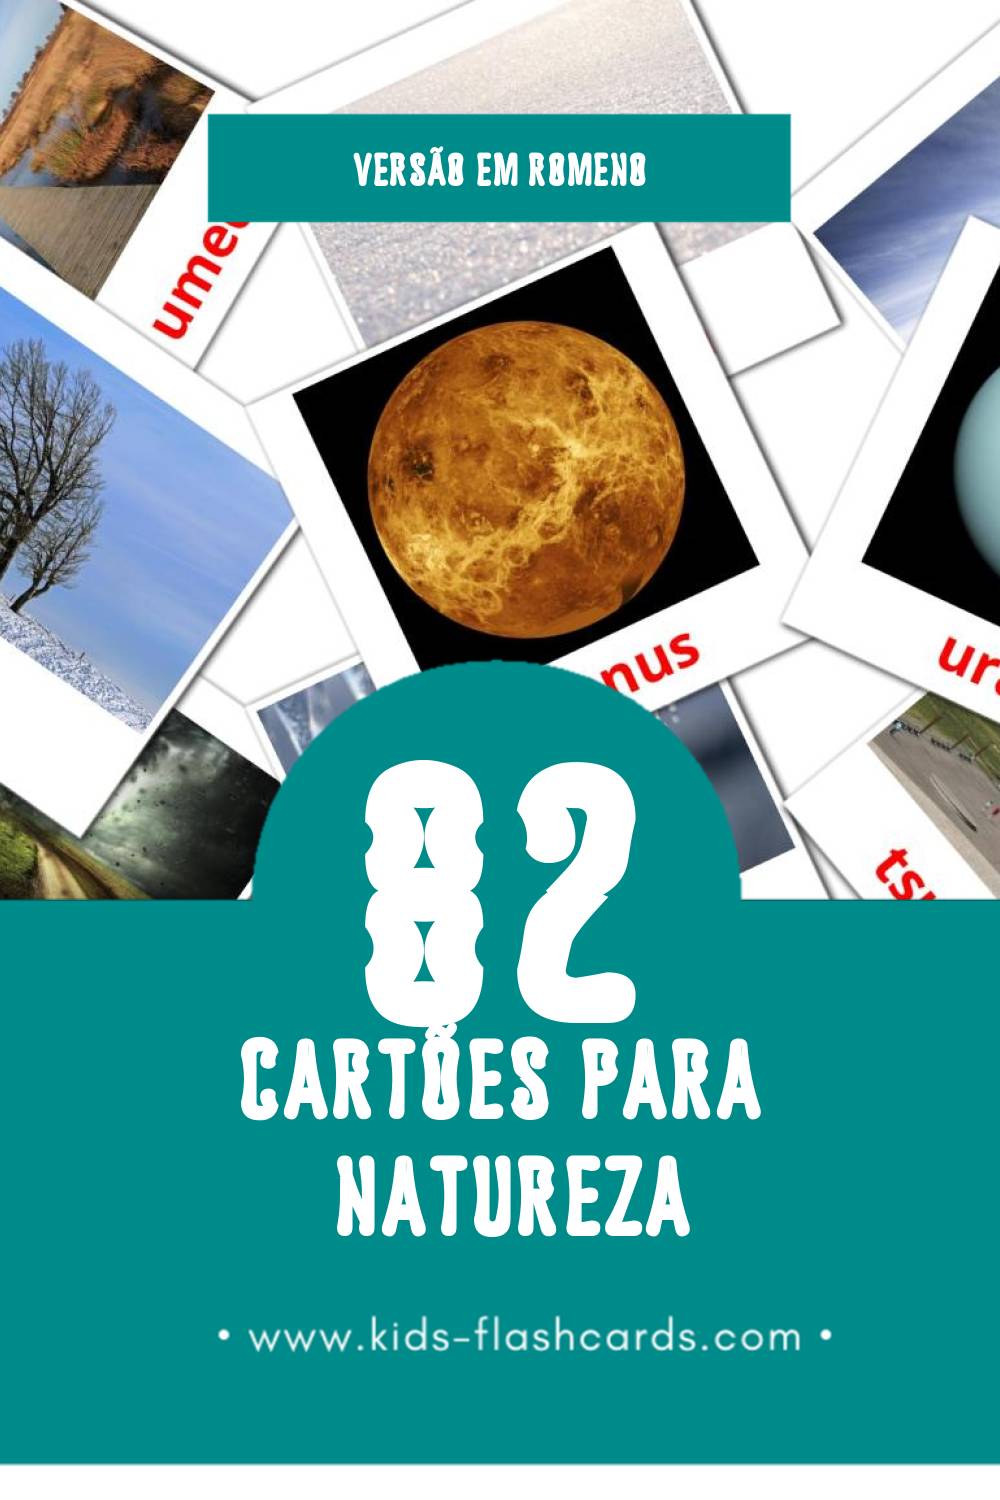 Flashcards de Natura Visuais para Toddlers (82 cartões em Romeno)